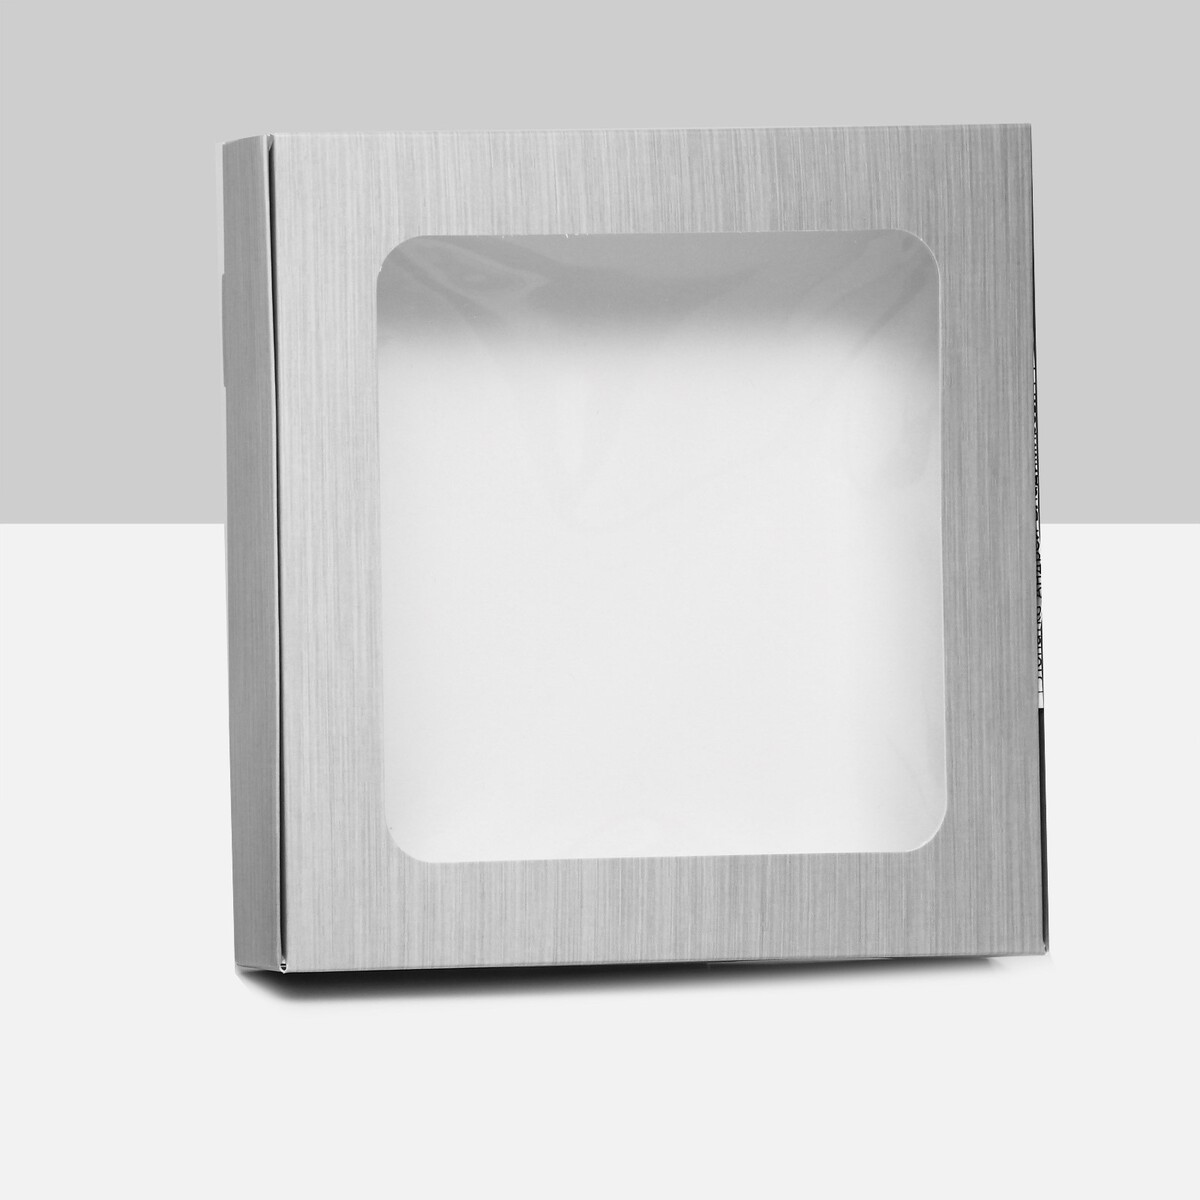 Коробка самосборная, с окном, серебрянная, 16 х 16 х 3 см коробка самосборная с окном мятная 13 х 13 х 3 см